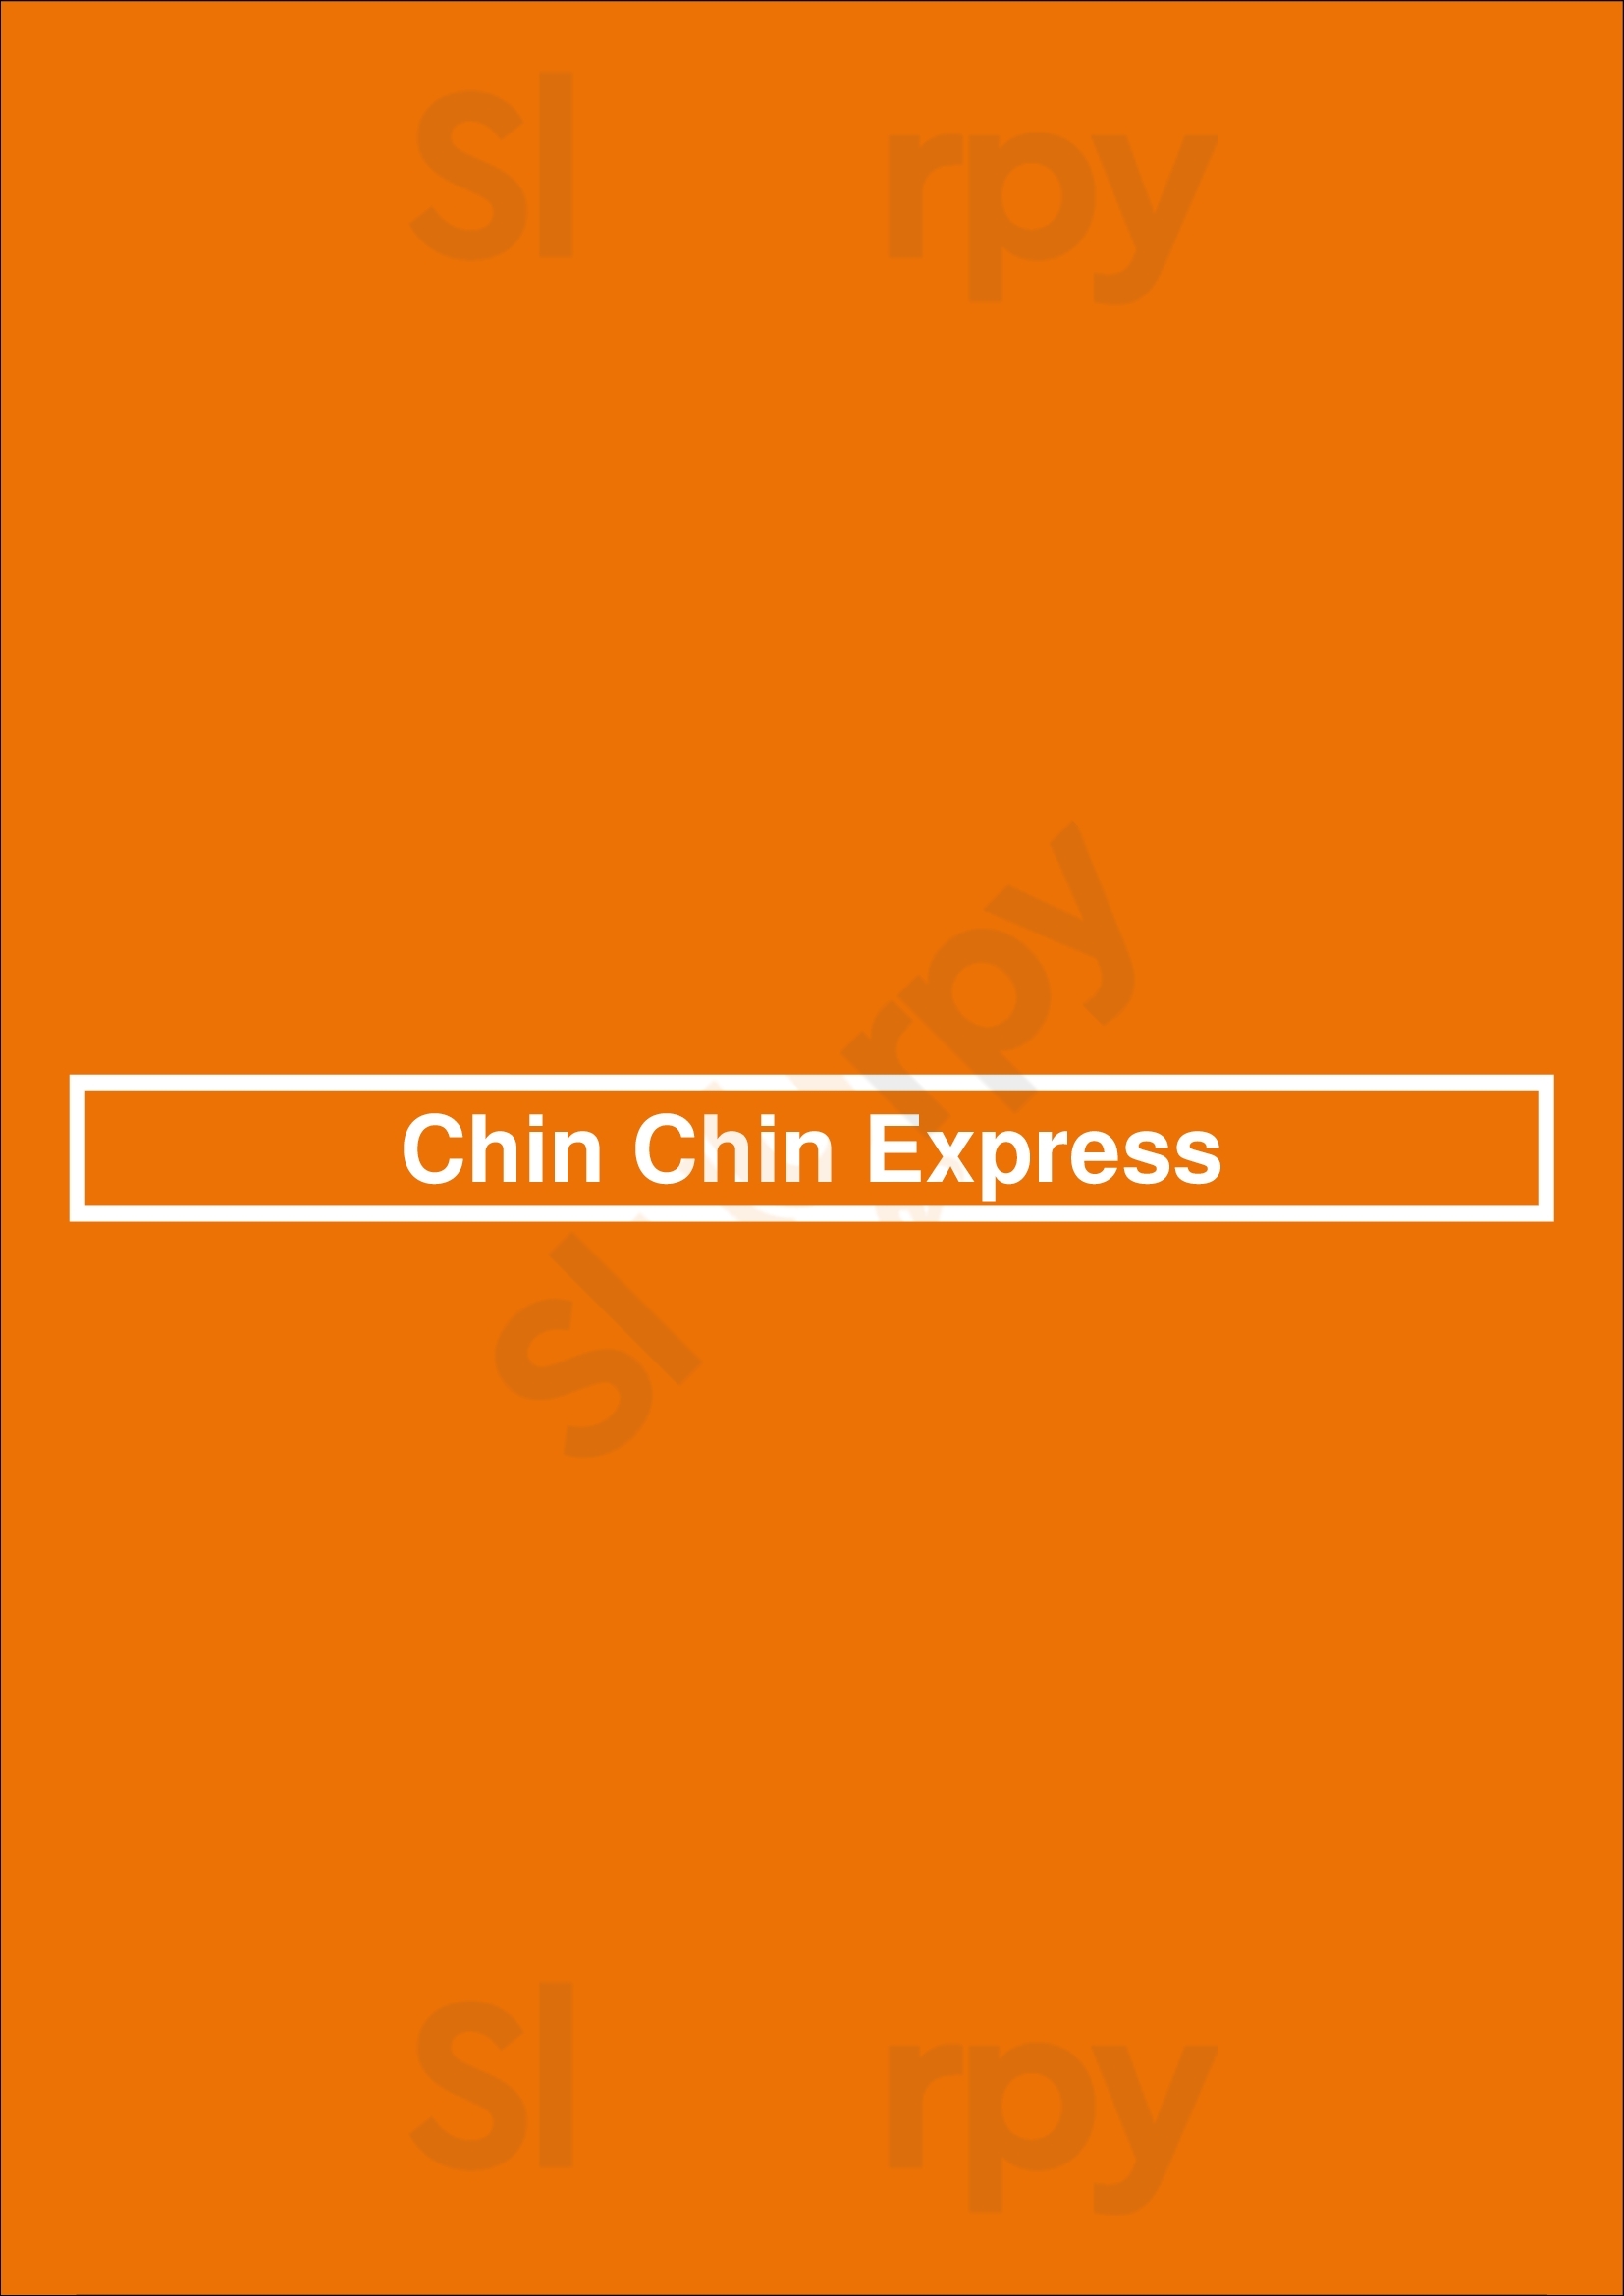 Chin Chin Express Atlanta Menu - 1